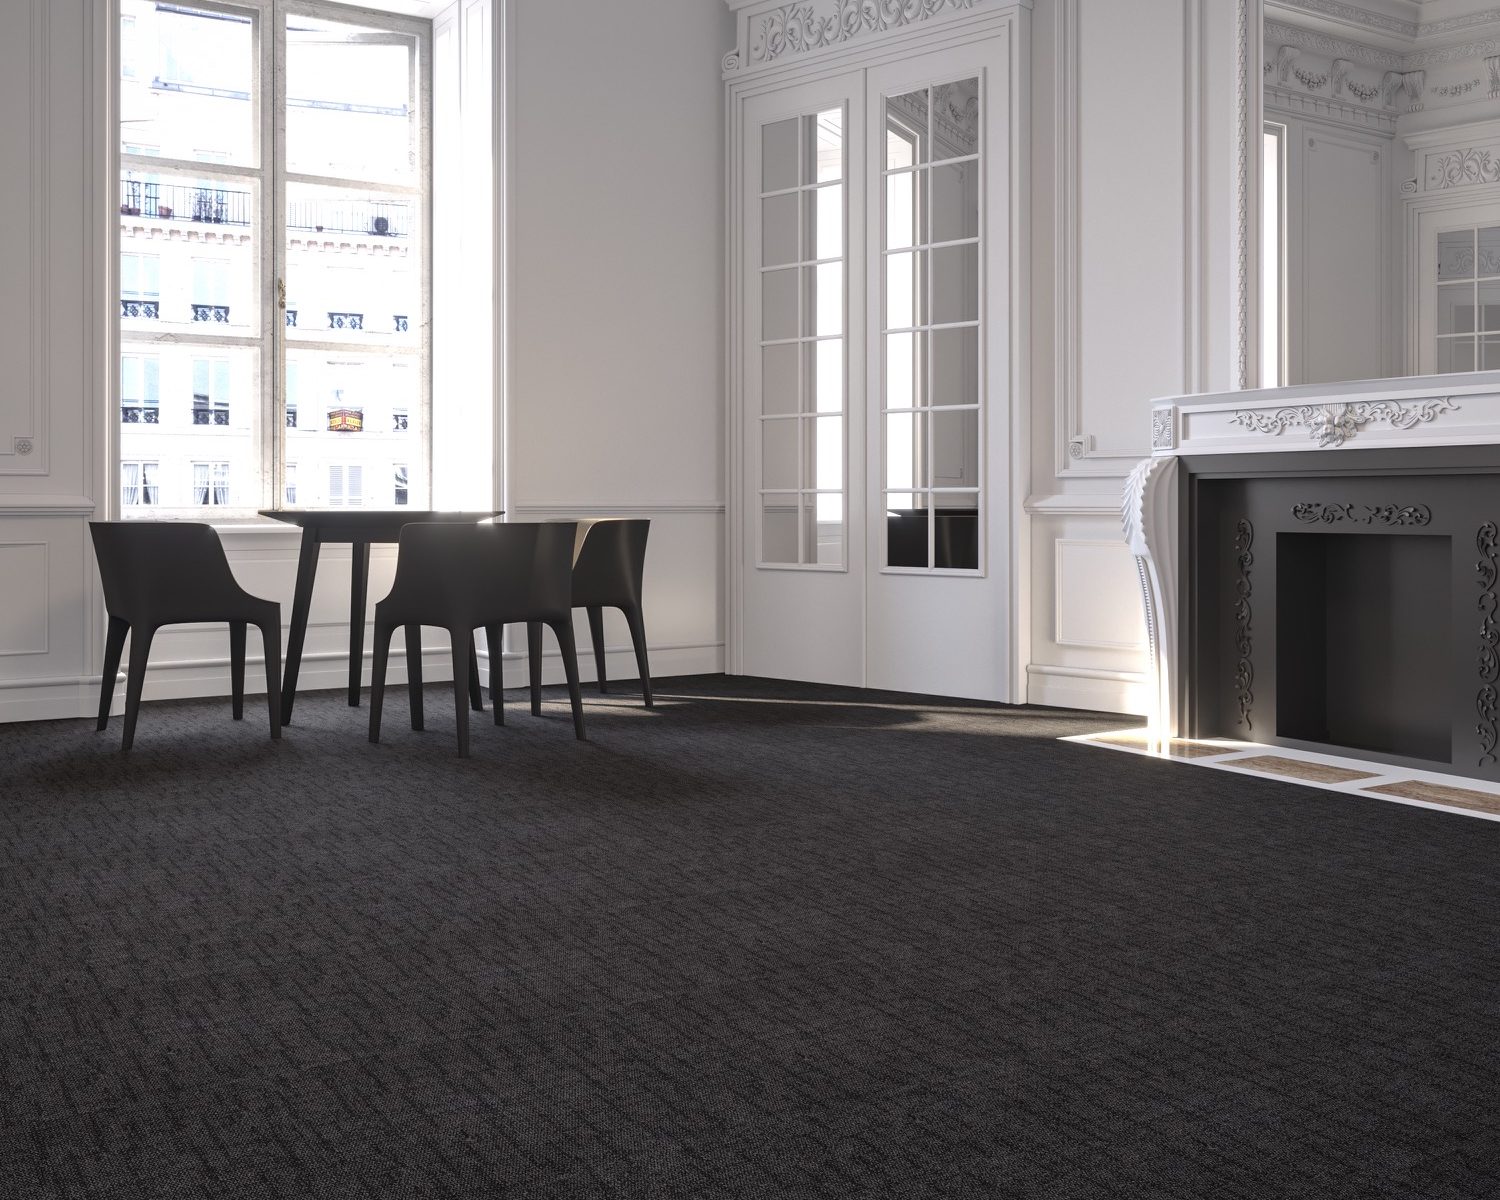 Freedom Bark Charcoal carpet tiles